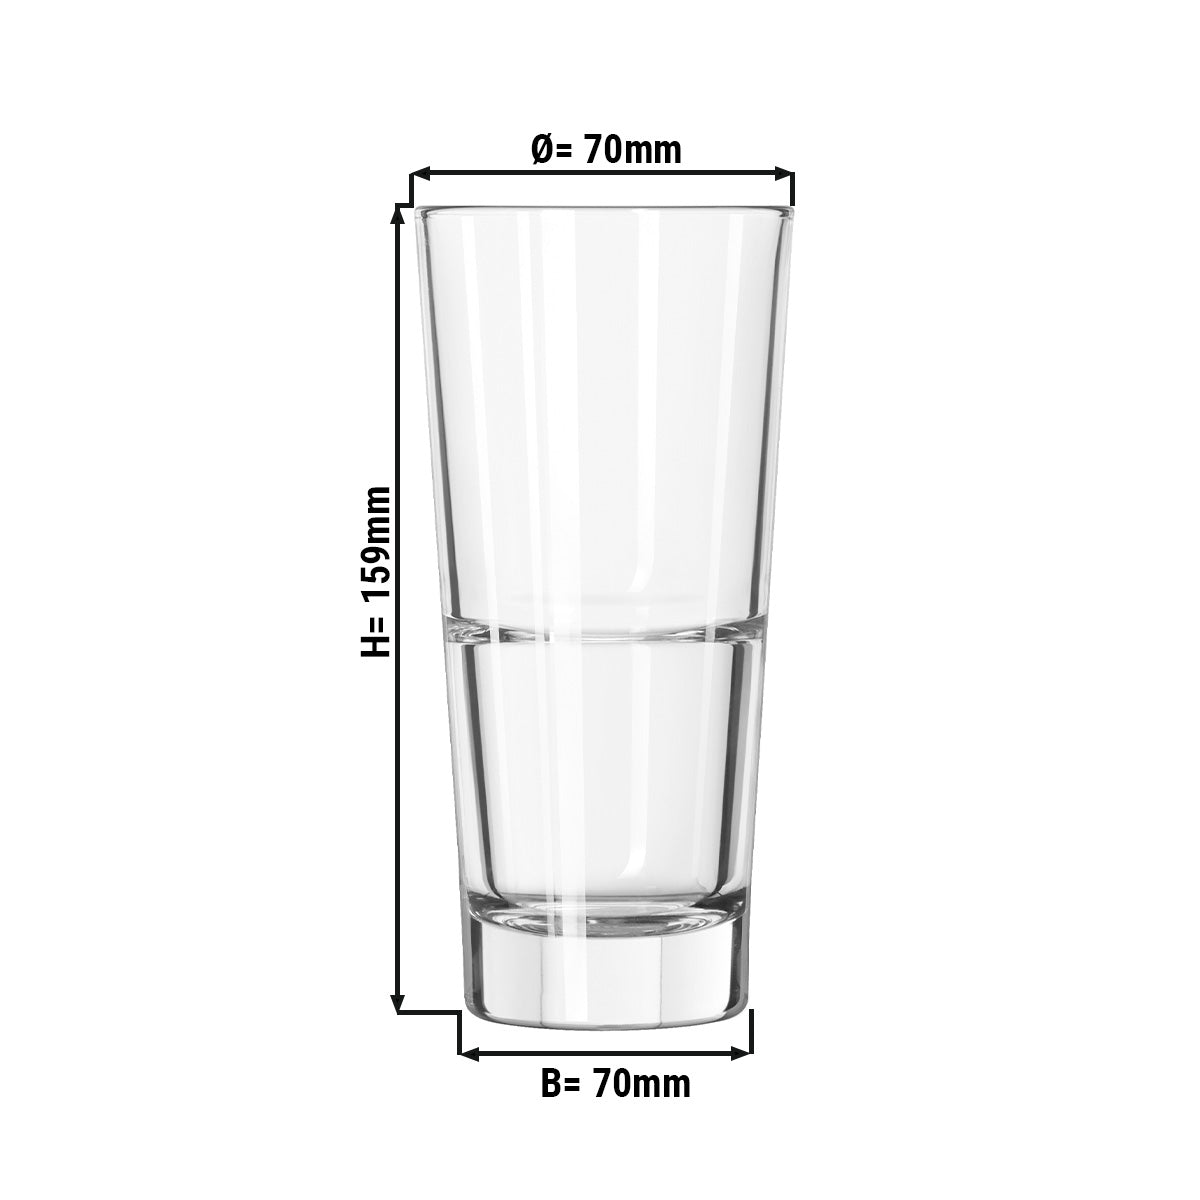 (12 stk.) Long drink glass - SAO PAULO - 296 ml - Gjennomsiktig